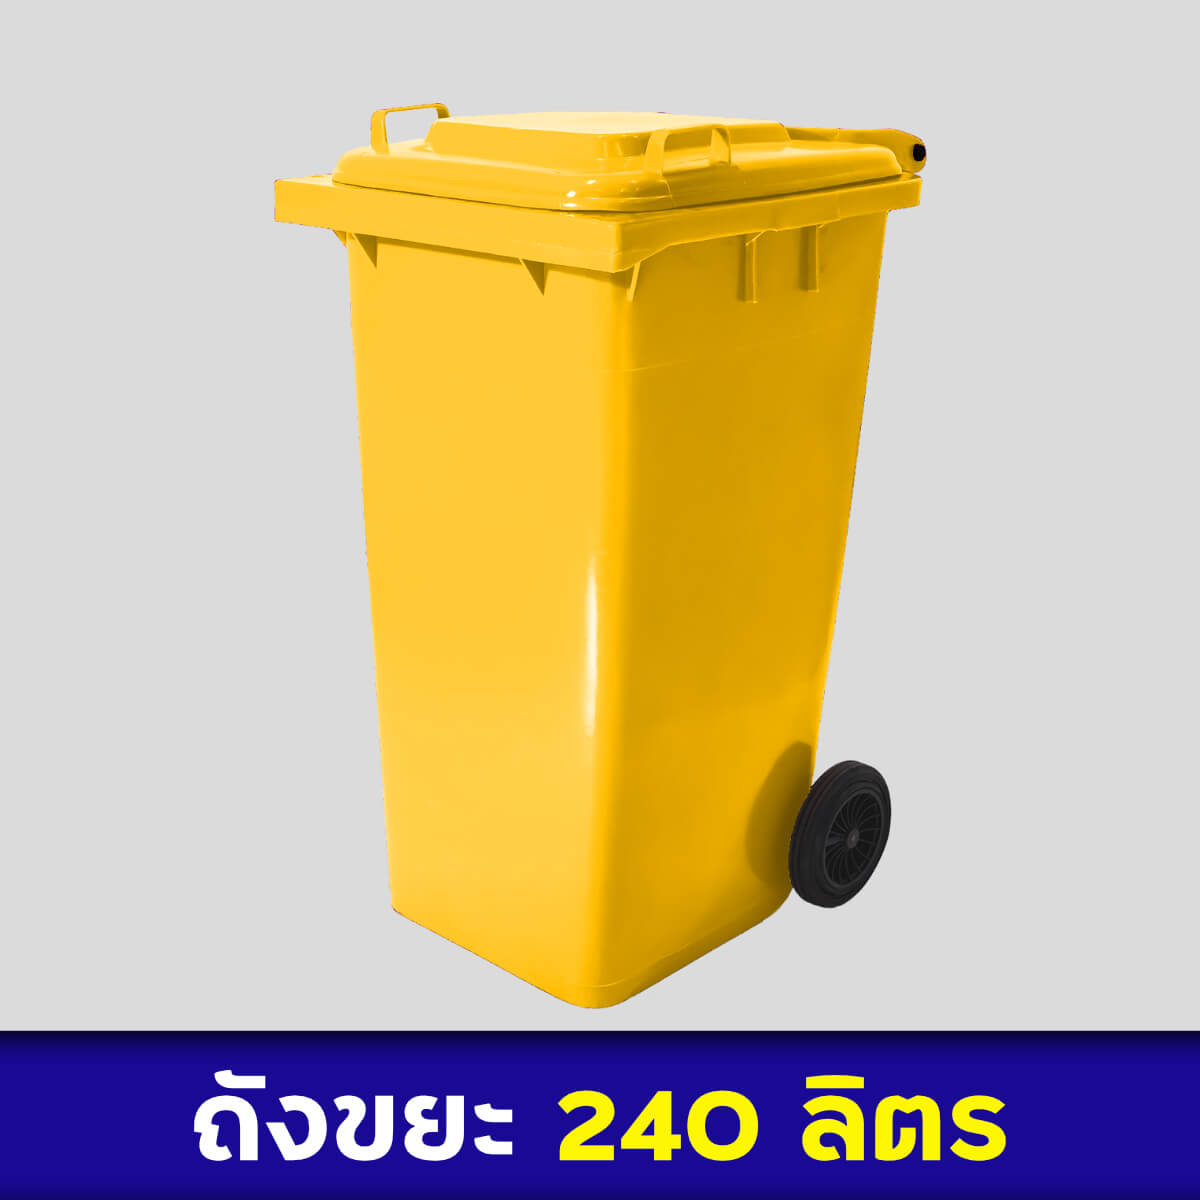 ถังขยะสีเหลือง 240ลิตร